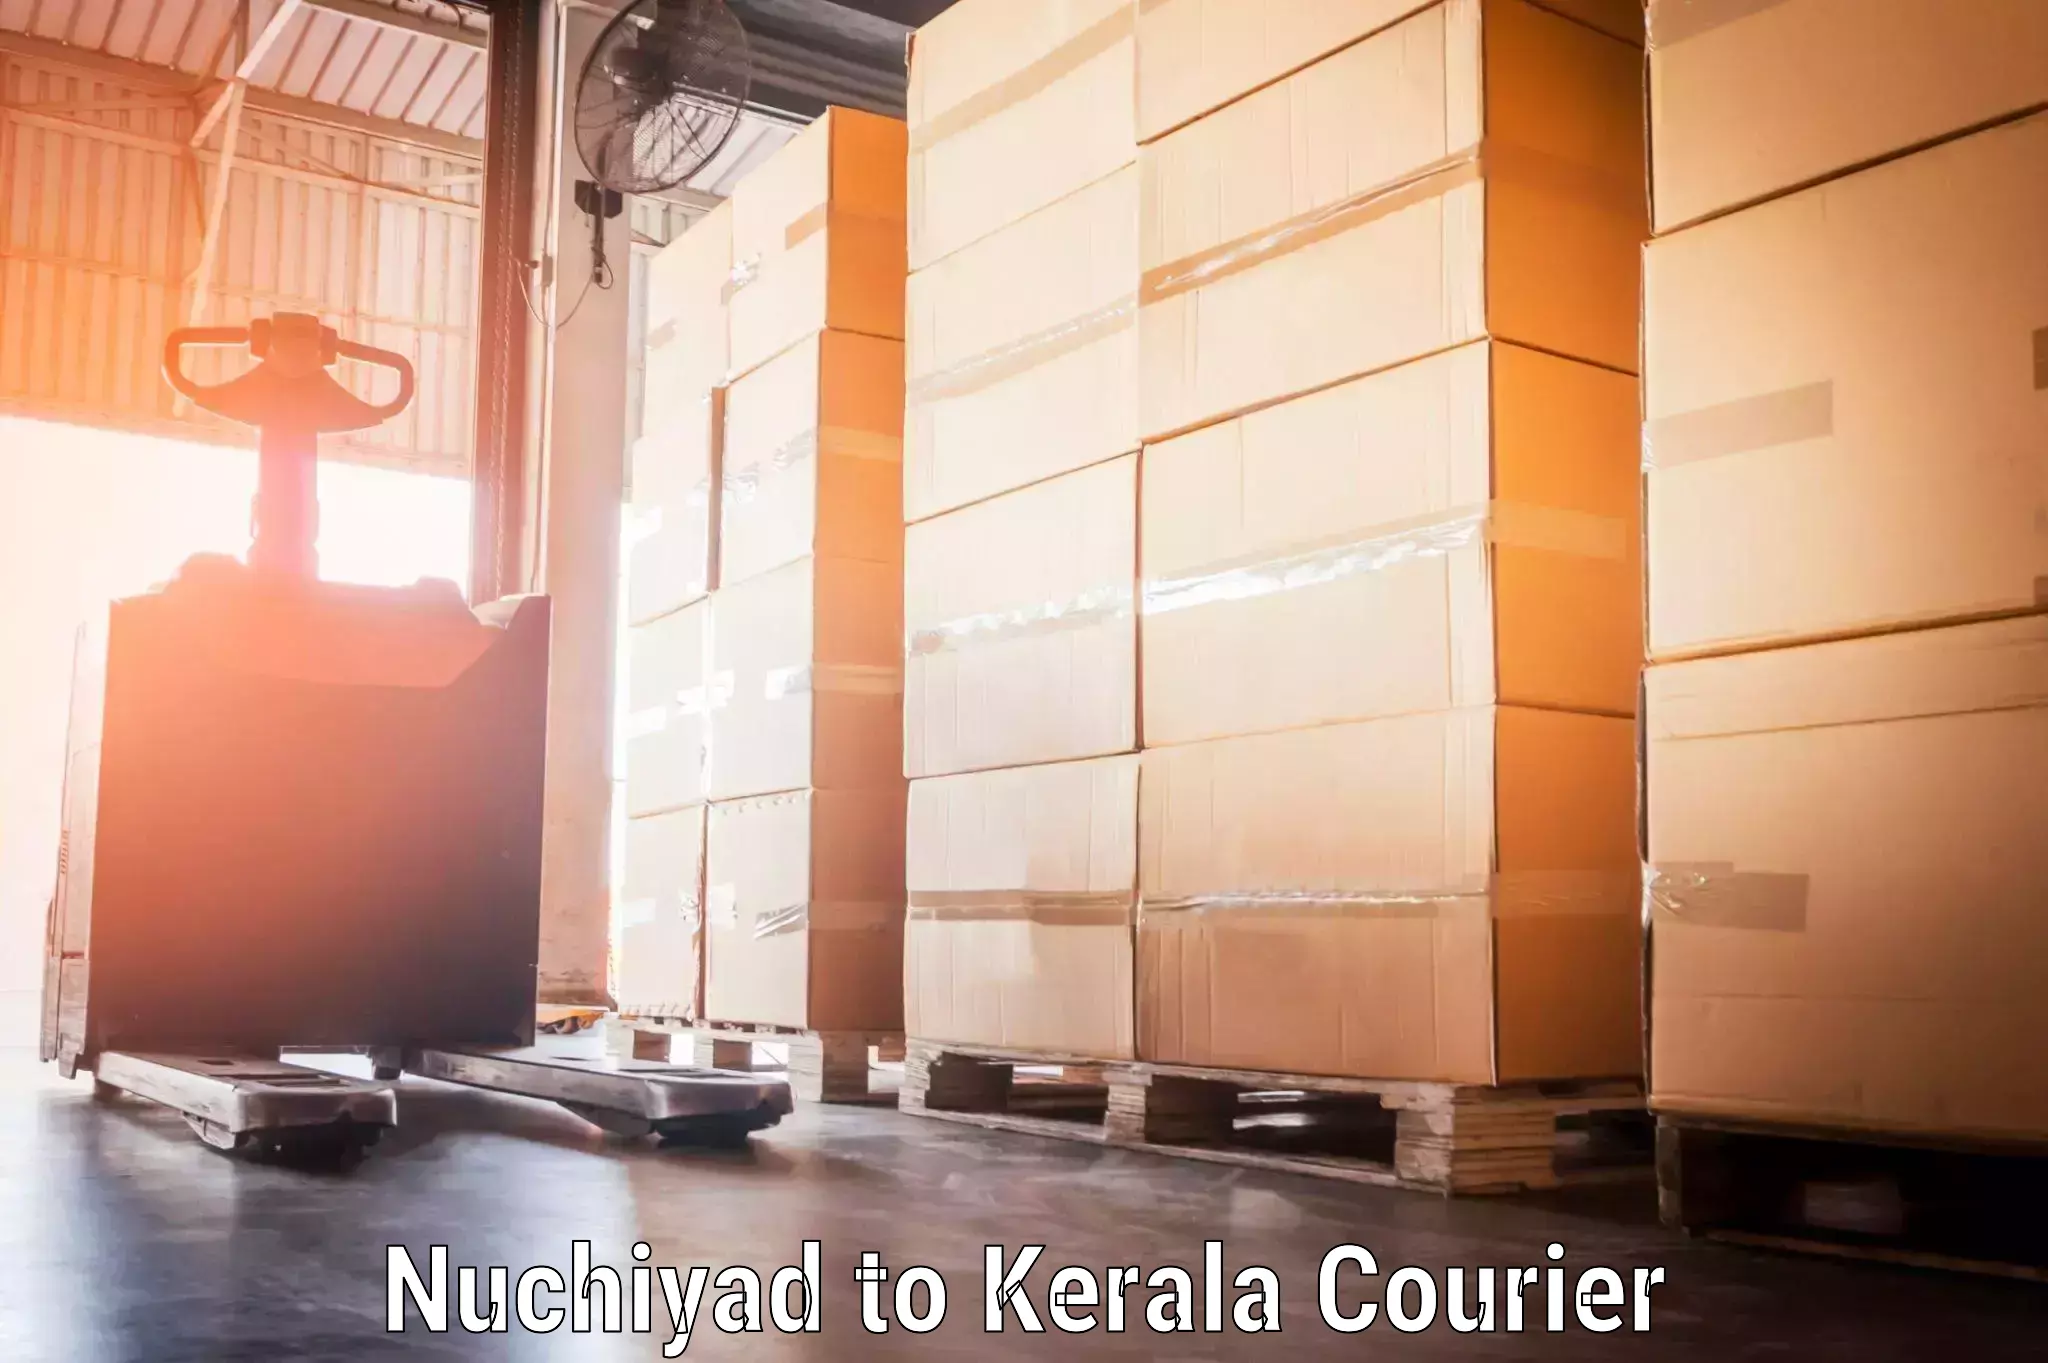 Digital baggage courier Nuchiyad to Cochin Port Kochi